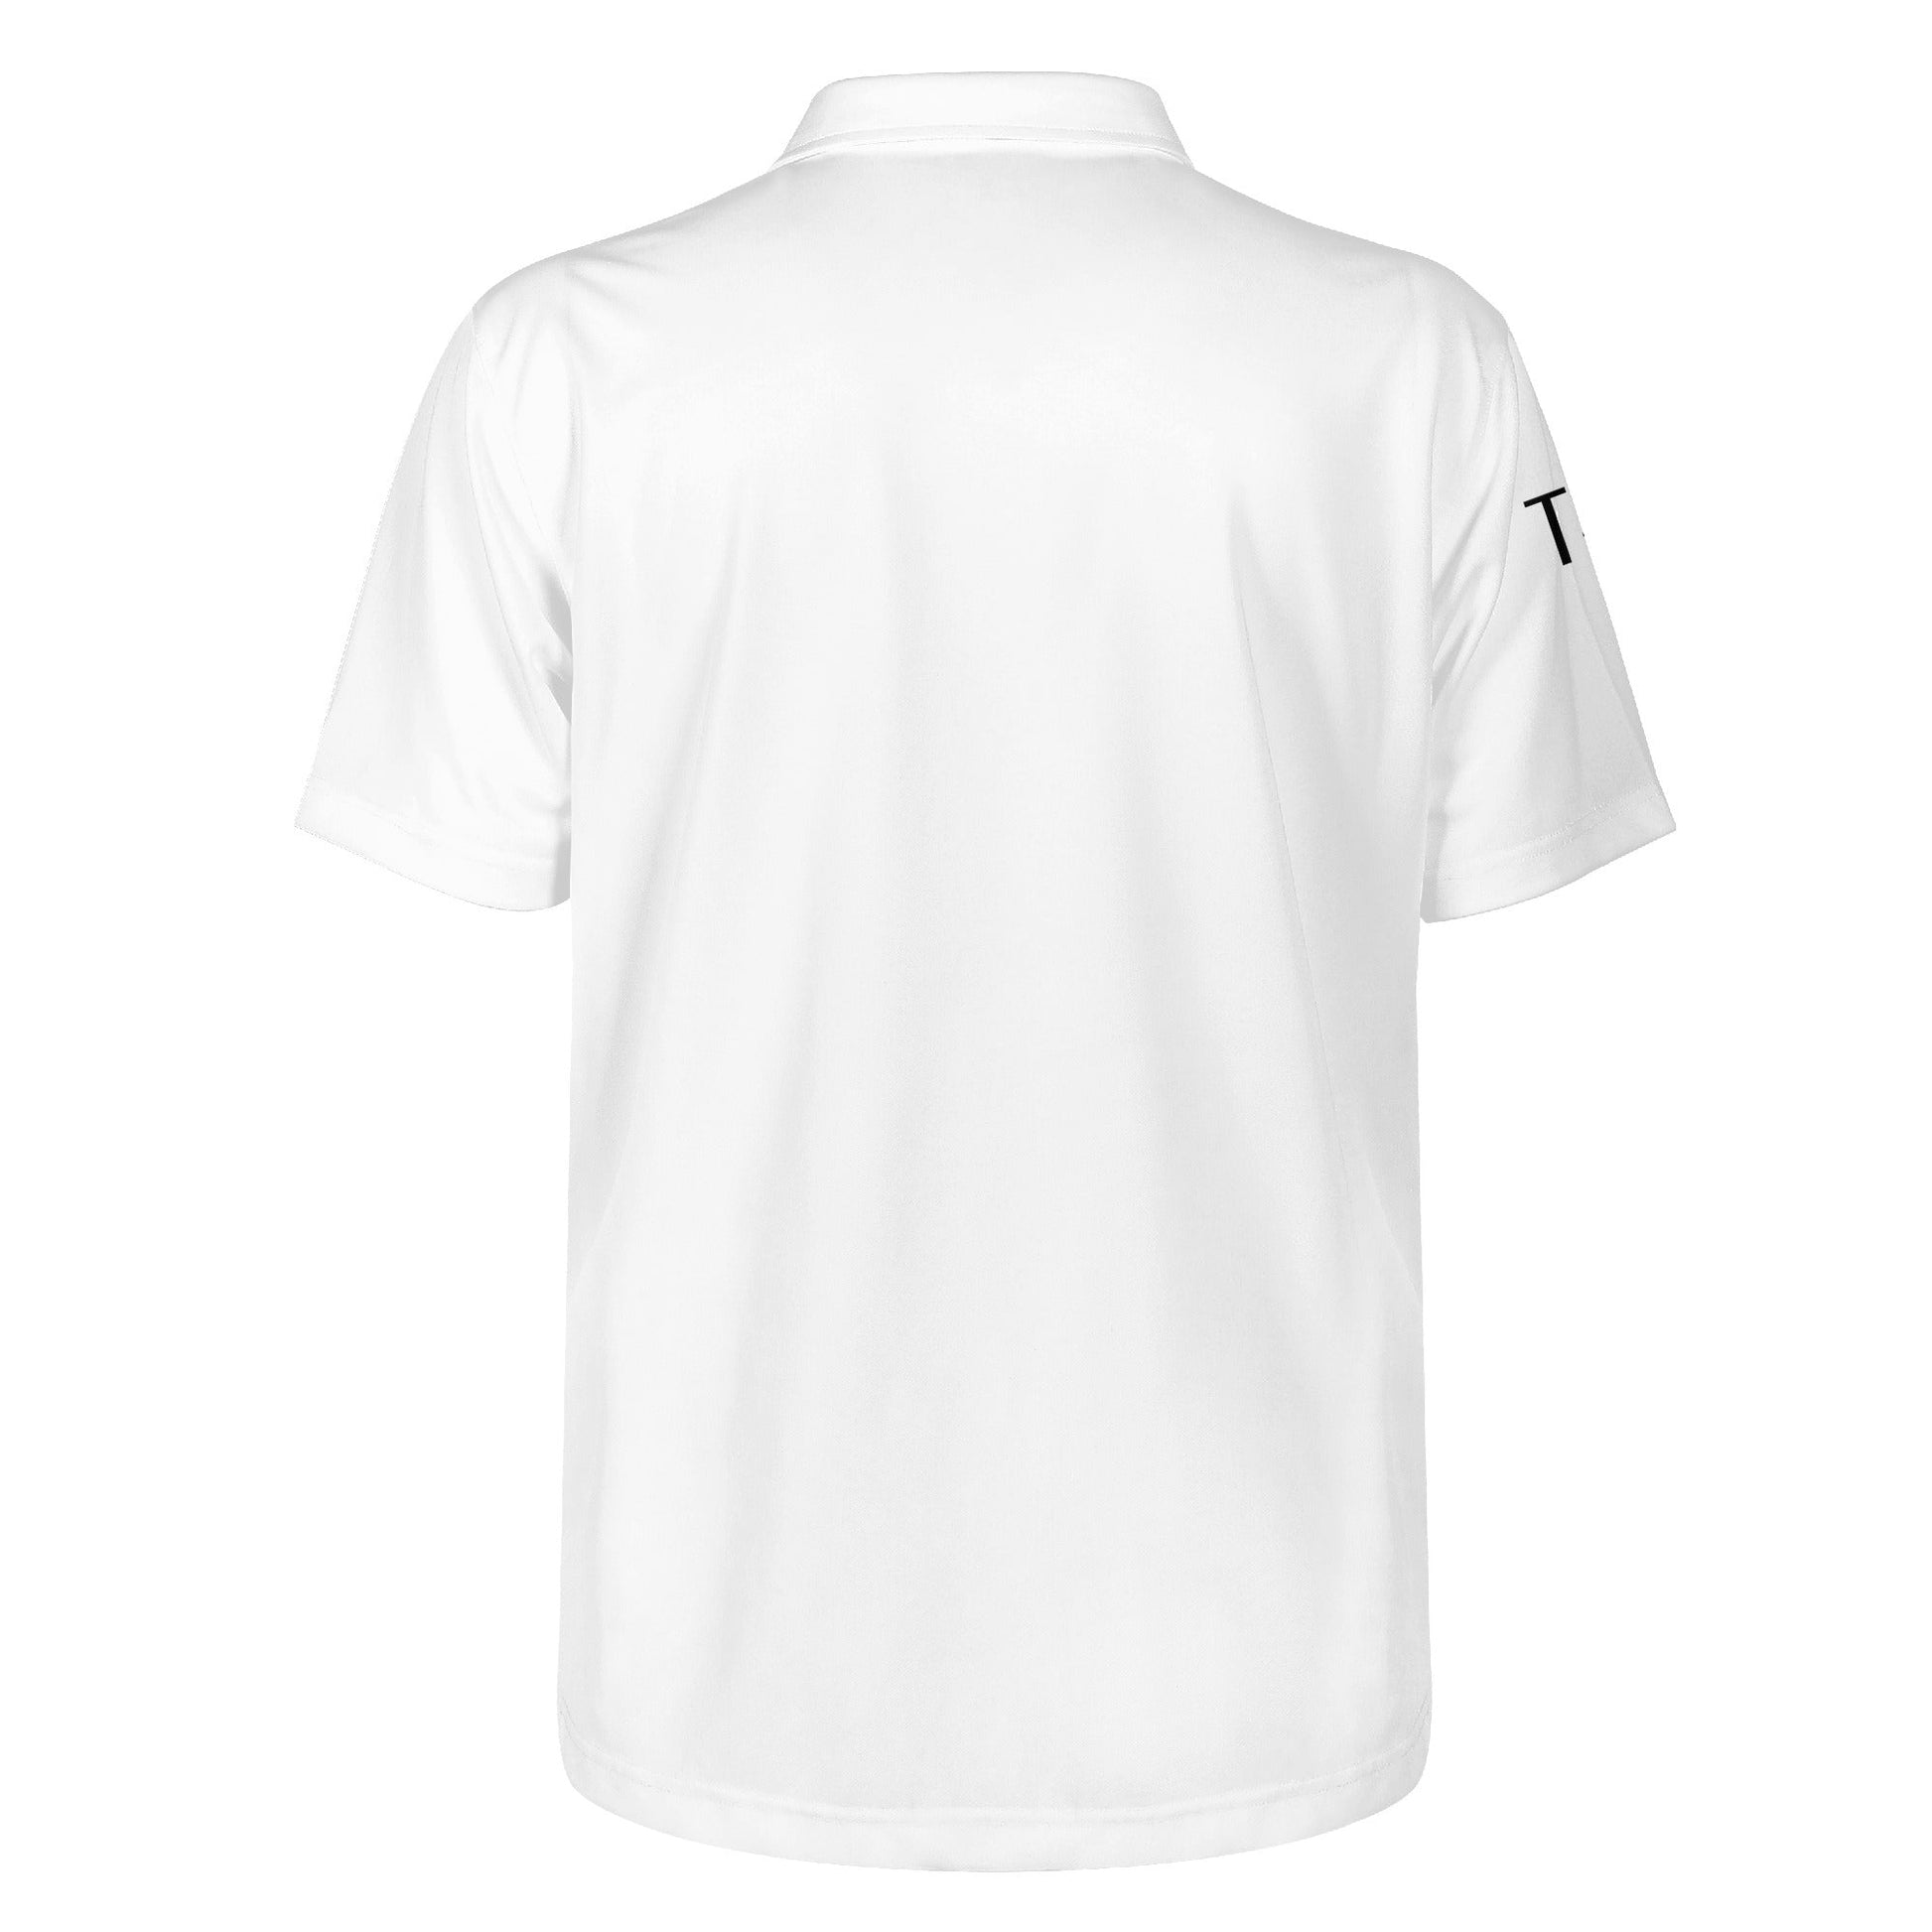 T4x Black Educated Men's Polo Shirt - T4x Quadruple Love